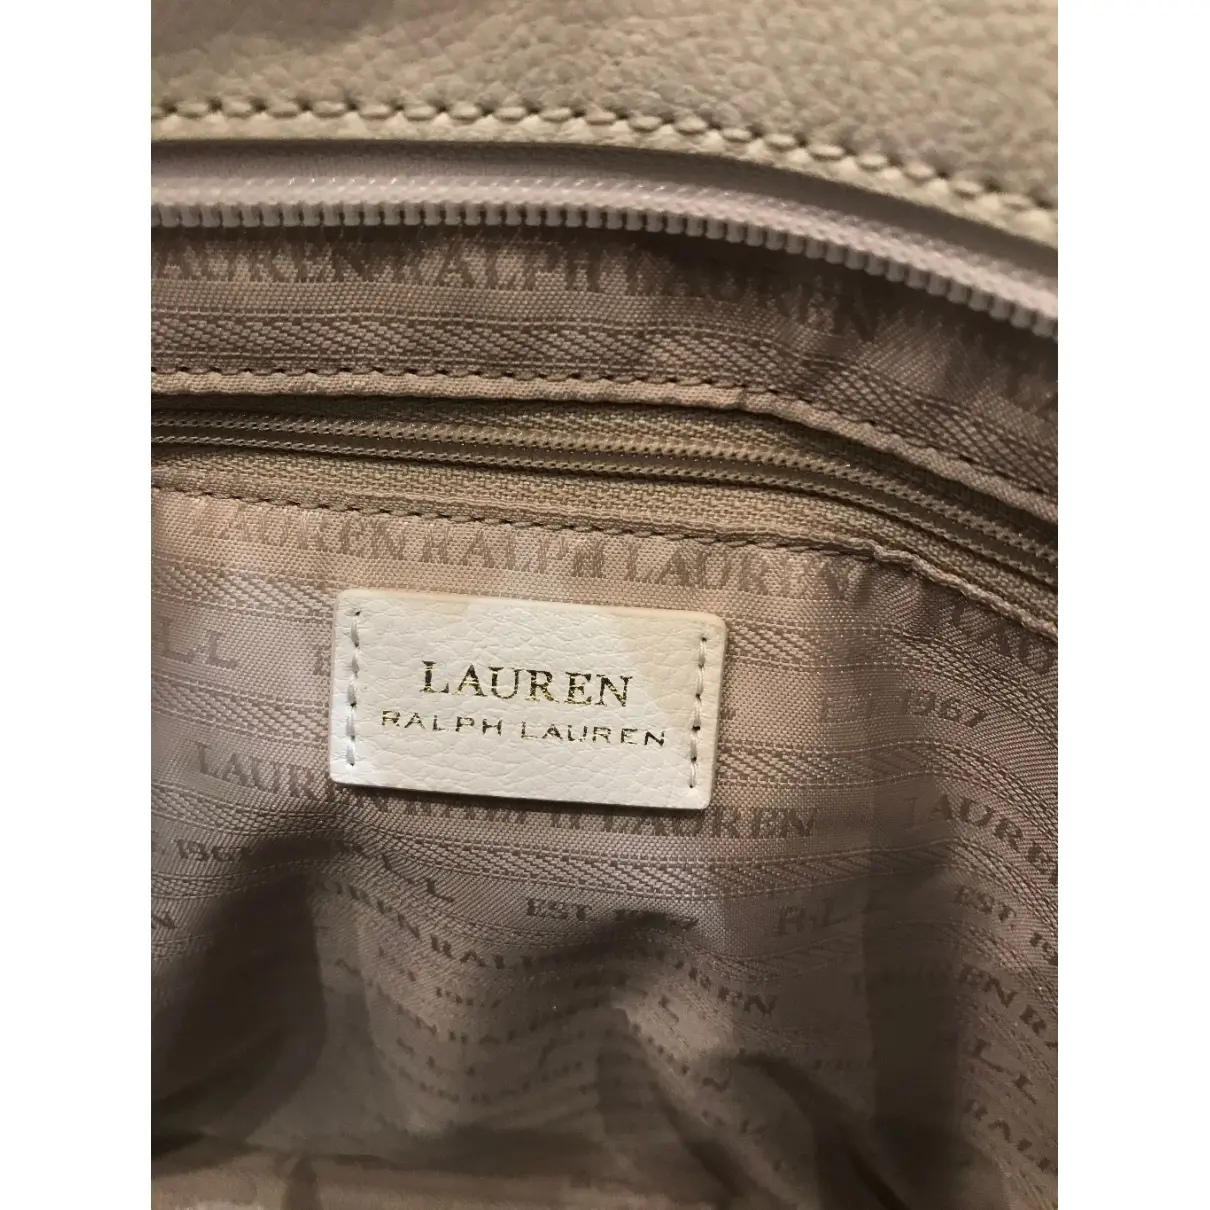 Buy Lauren Ralph Lauren Leather tote online